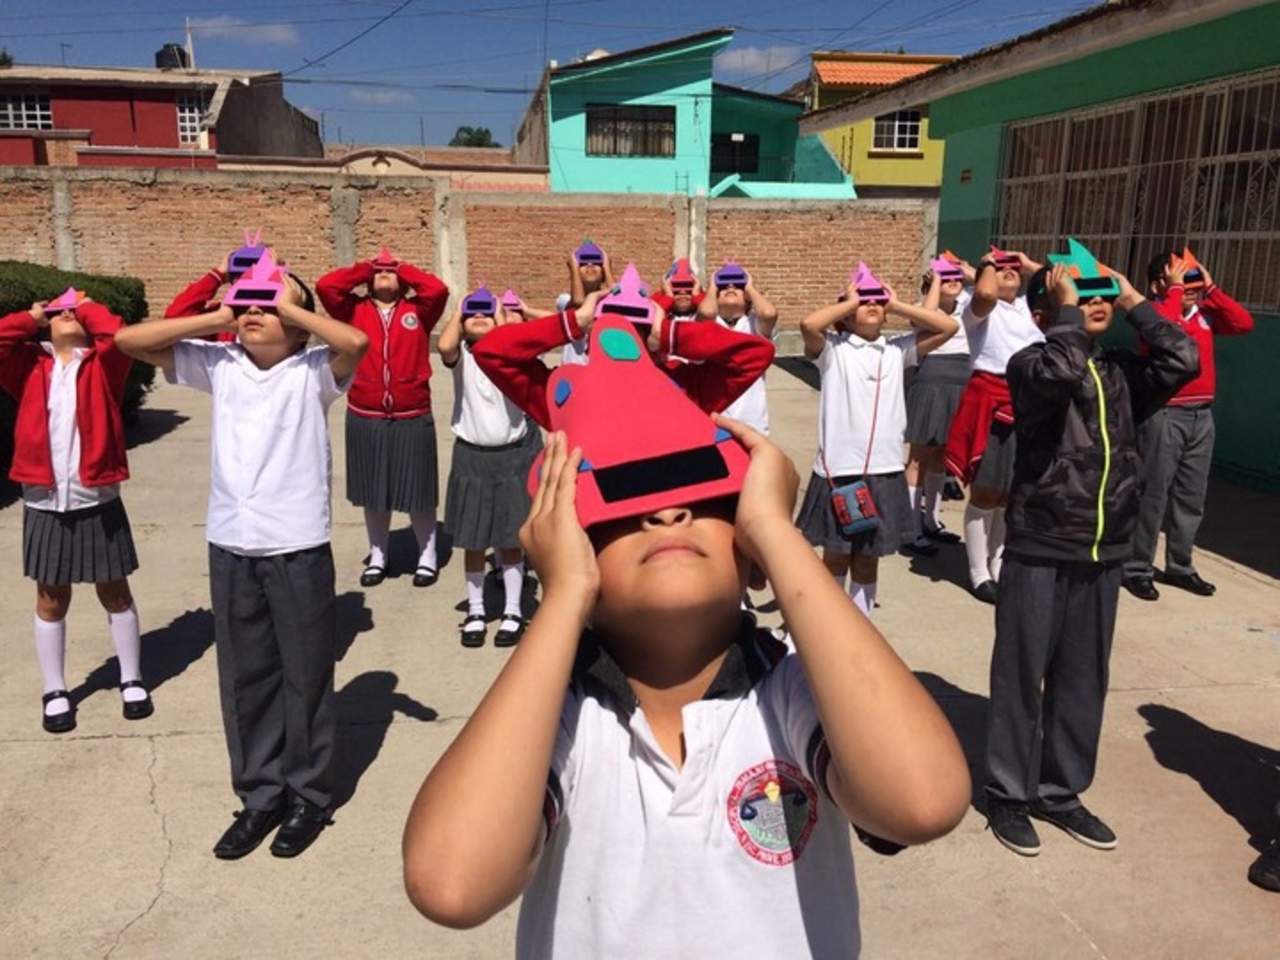 Creatividad. La comunidad escolar se puso de acuerdo y lograron ver el eclipse de forma segura. (ESPECIAL)

